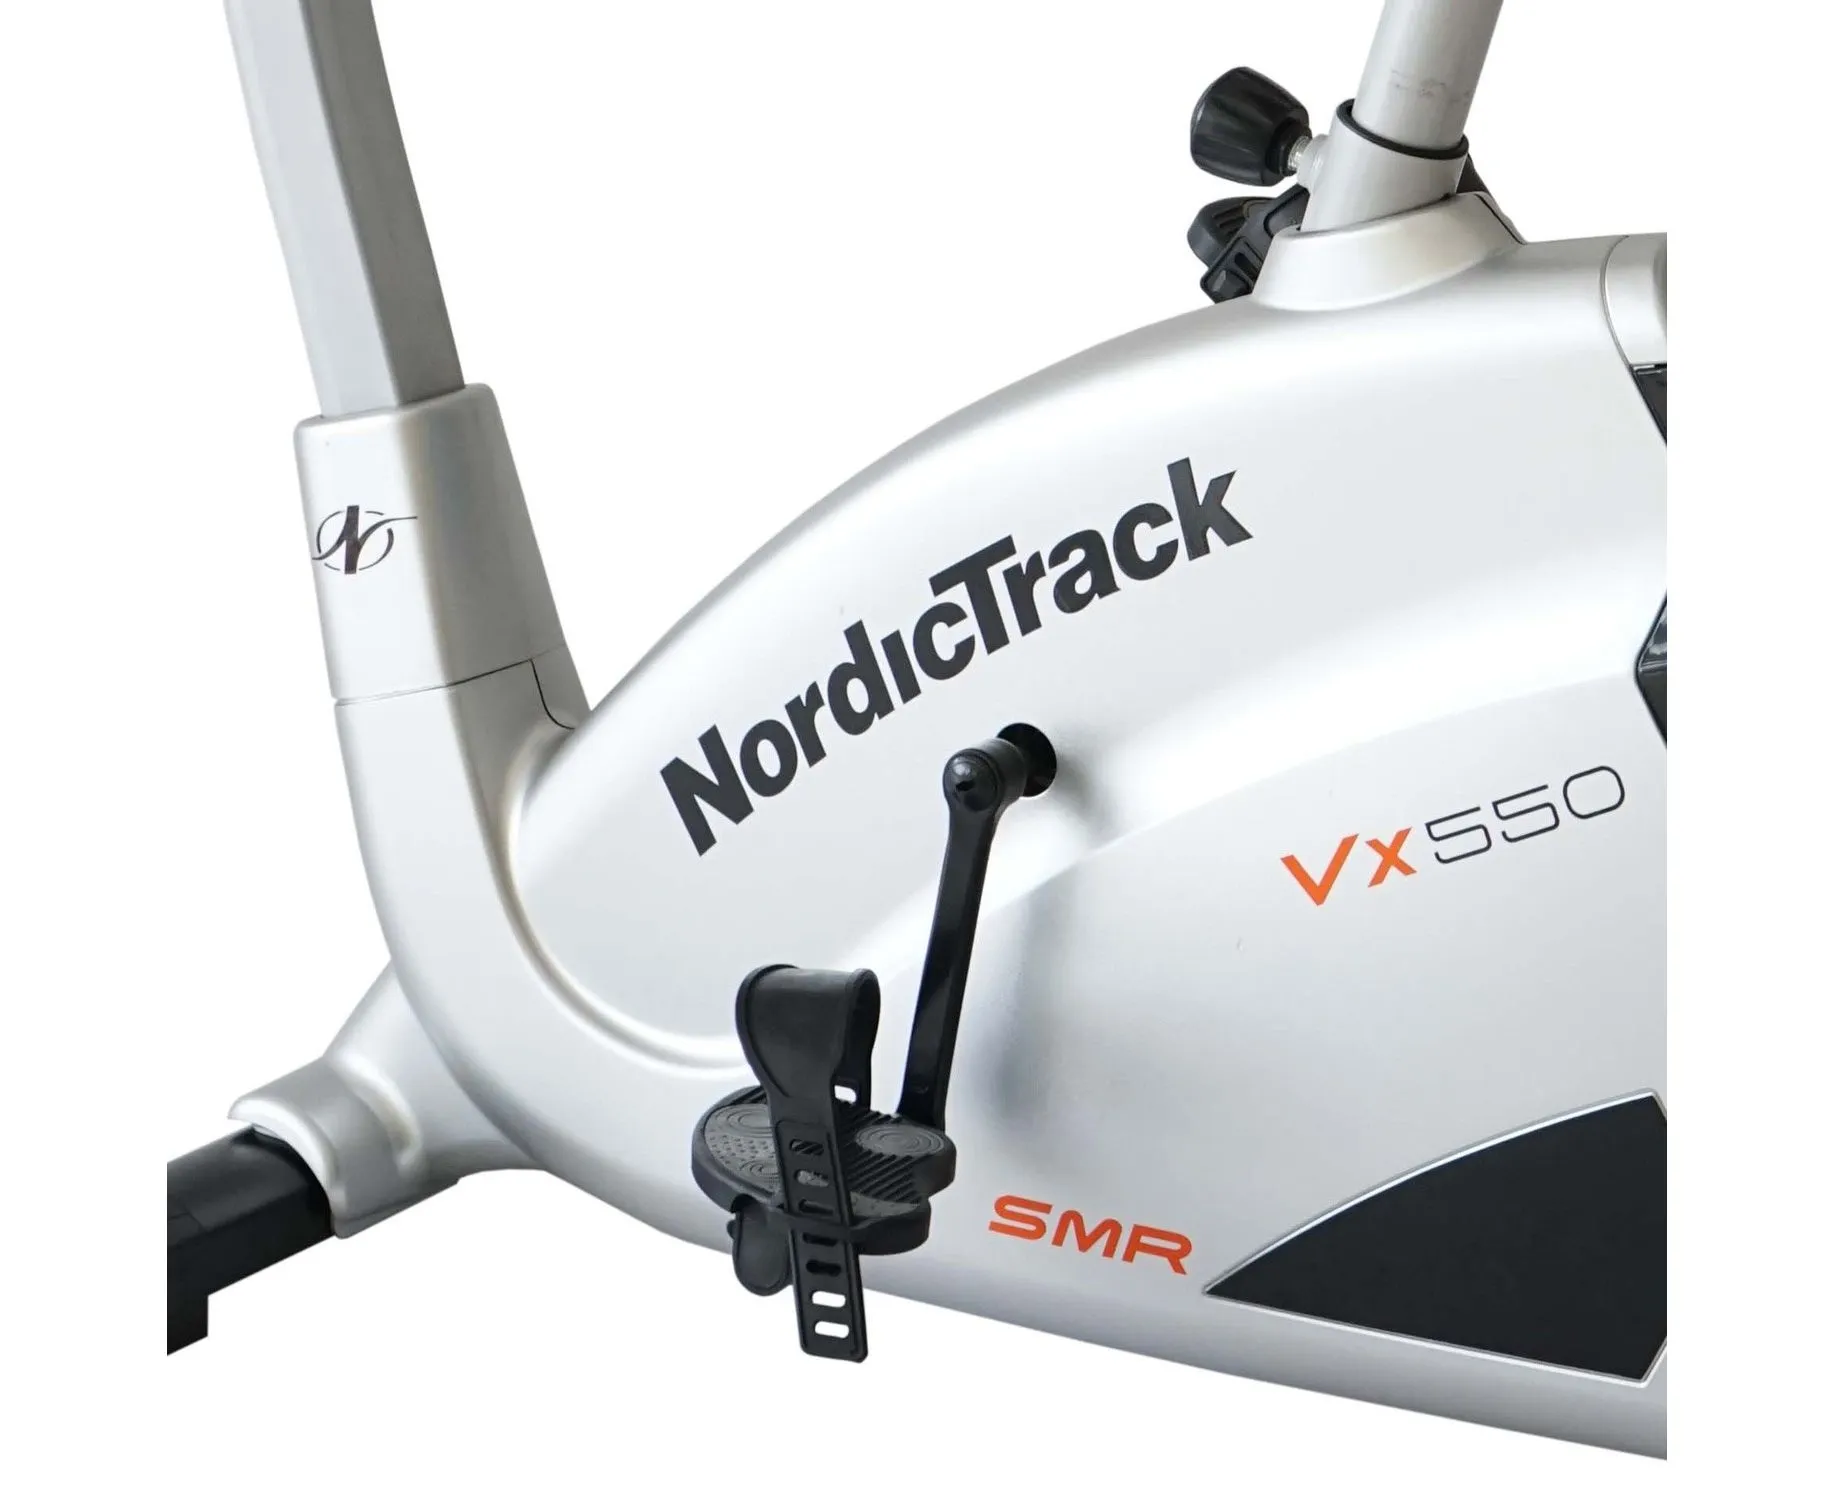 Велотренажер NordicTrack VX 550 - 5 